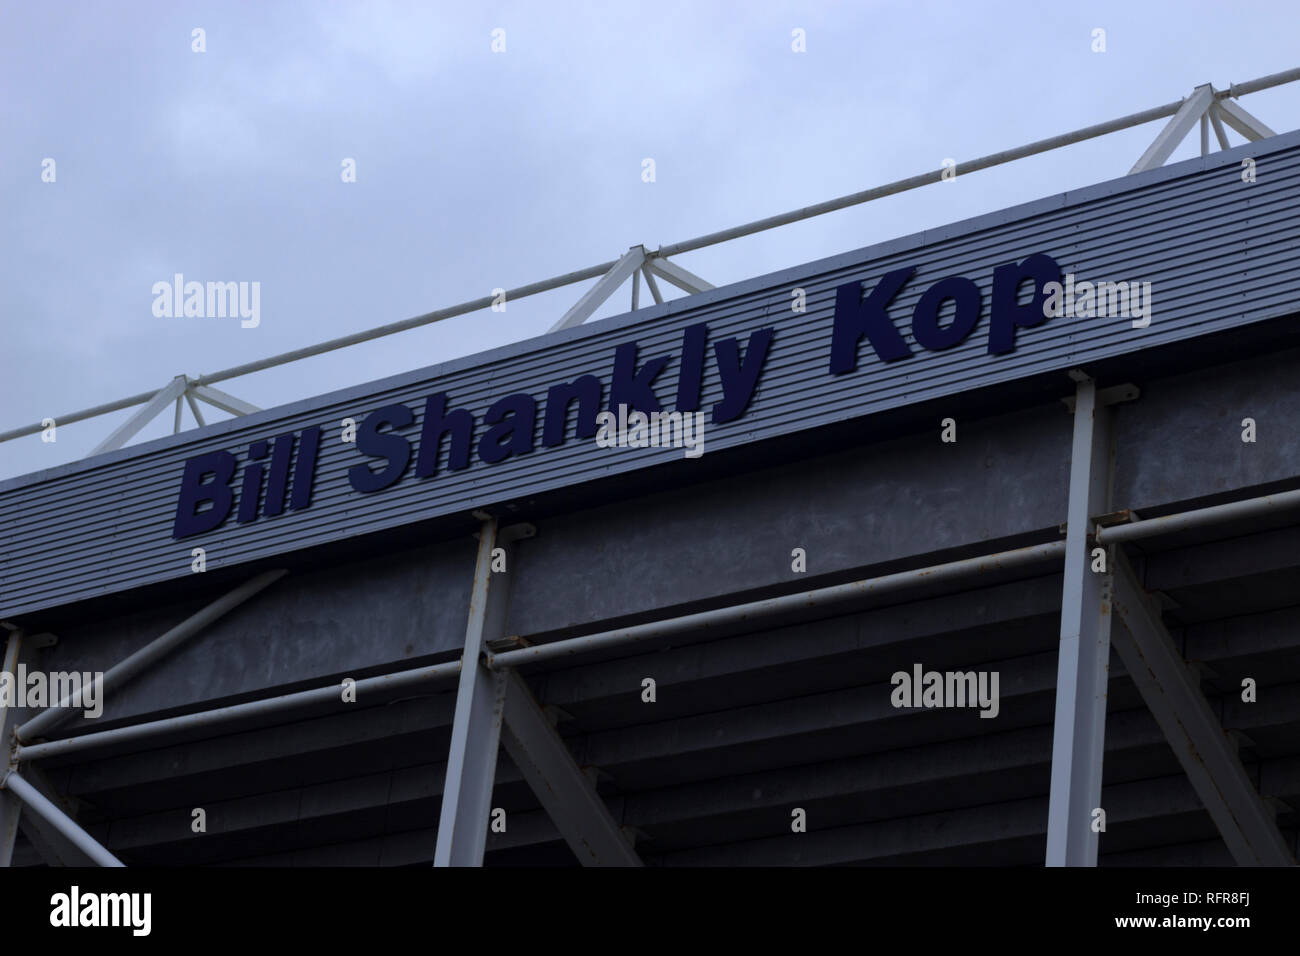 Bill Shankly Kop, Deepdale Stock Photo